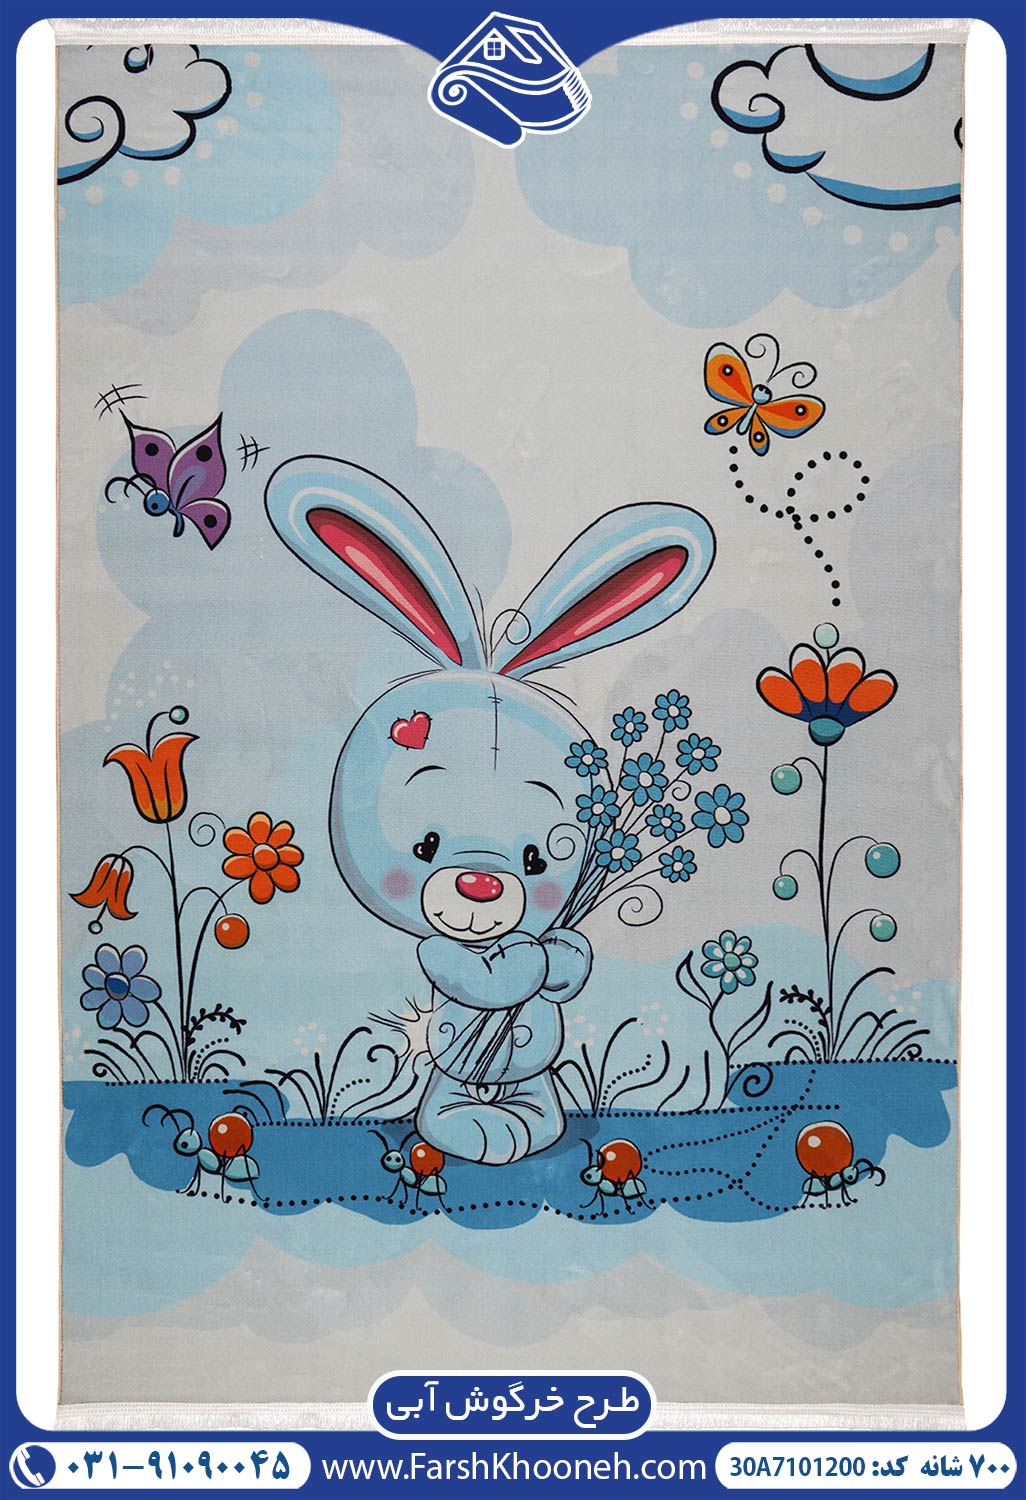 فرش کودک طرح خرگوش 700 شانه کد 7101200